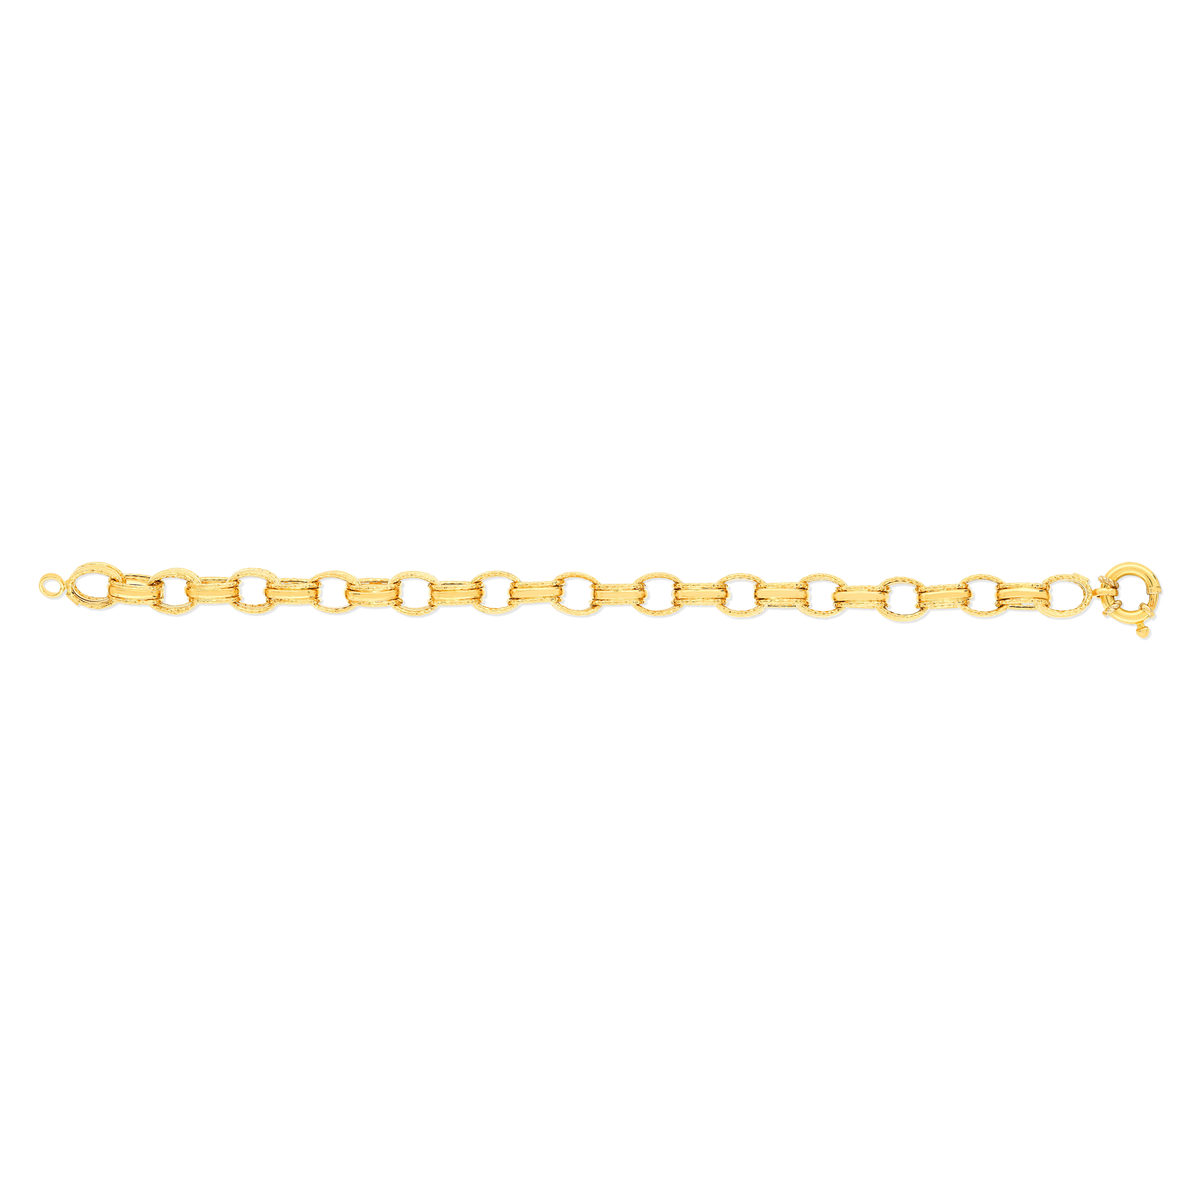 Bracelet or jaune 750 19 cm - vue 2